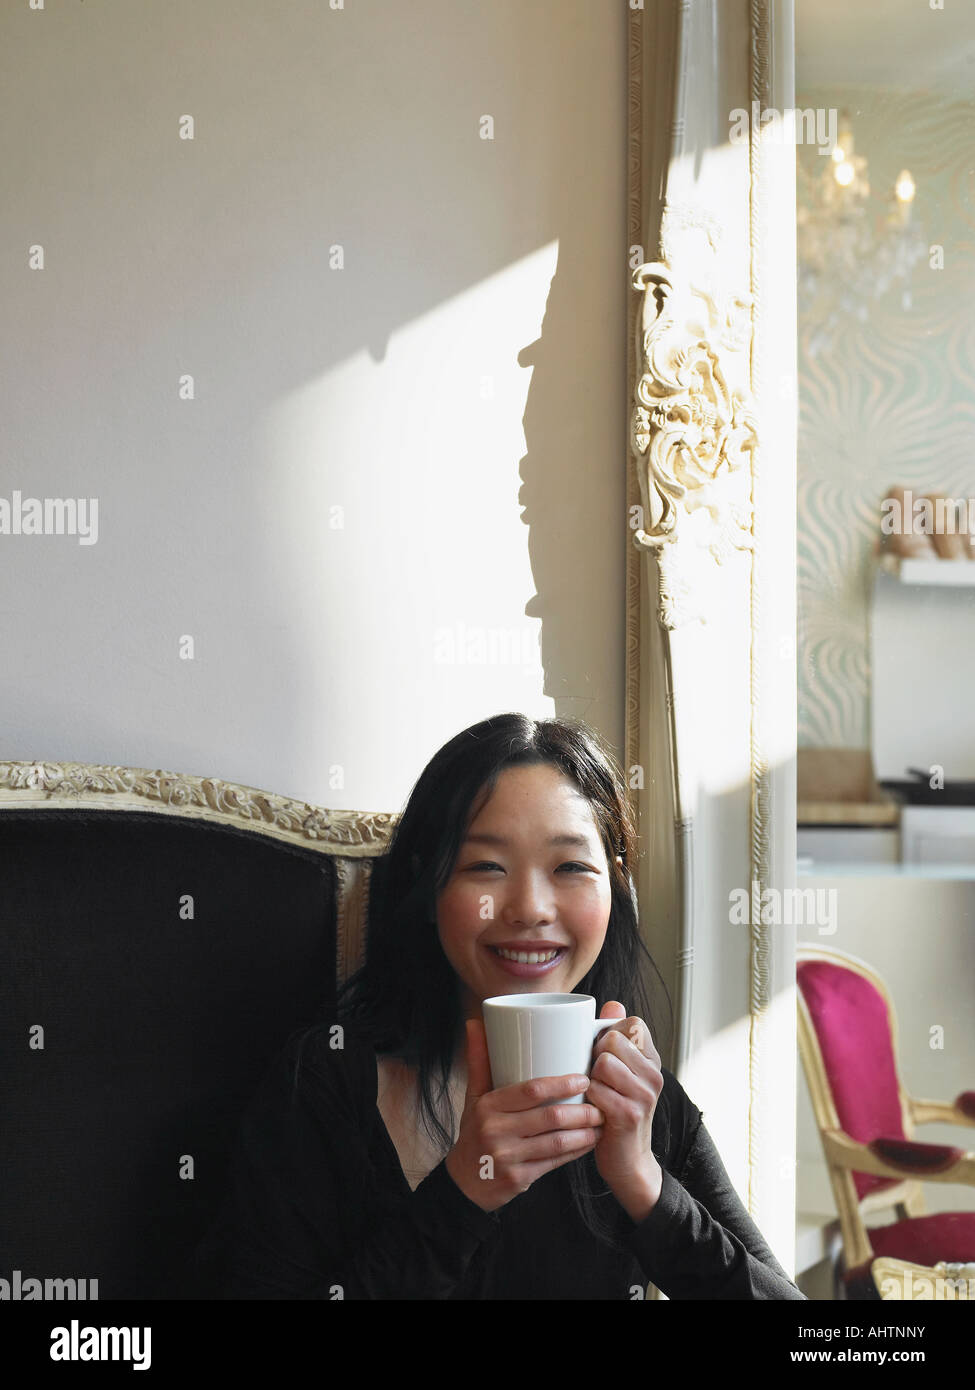 Jeune femme assise dans le holding cup, smiling, portrait Banque D'Images